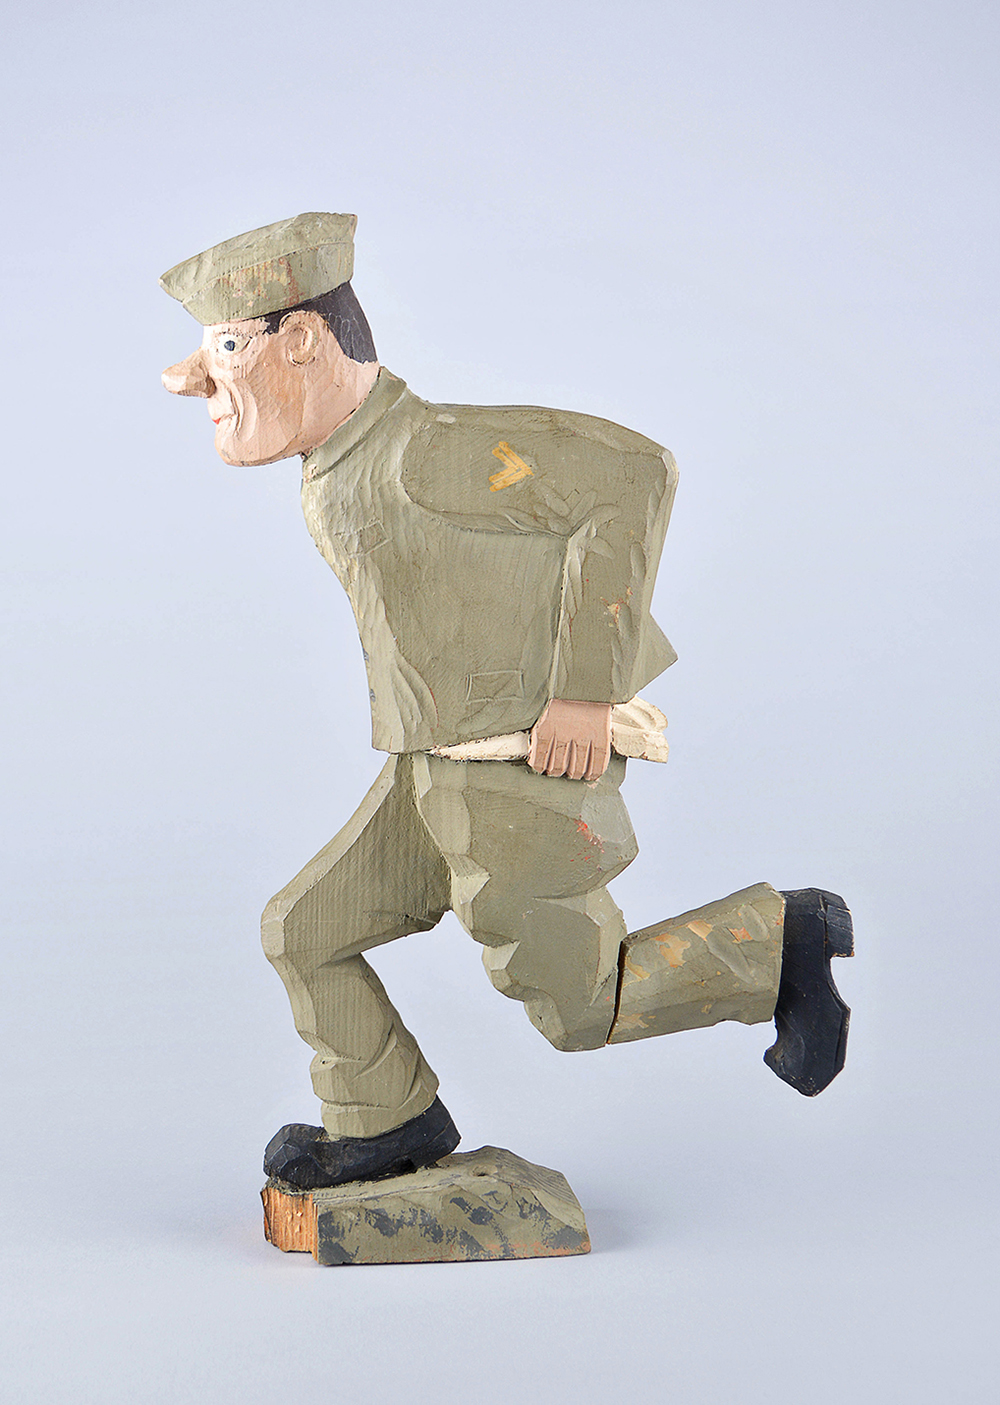 Sculpture sur bois, de style rustique, d’un soldat en pleine course. Il a un uniforme vert, des bottes noires et sa chemise n’est pas rentrée dans son pantalon.